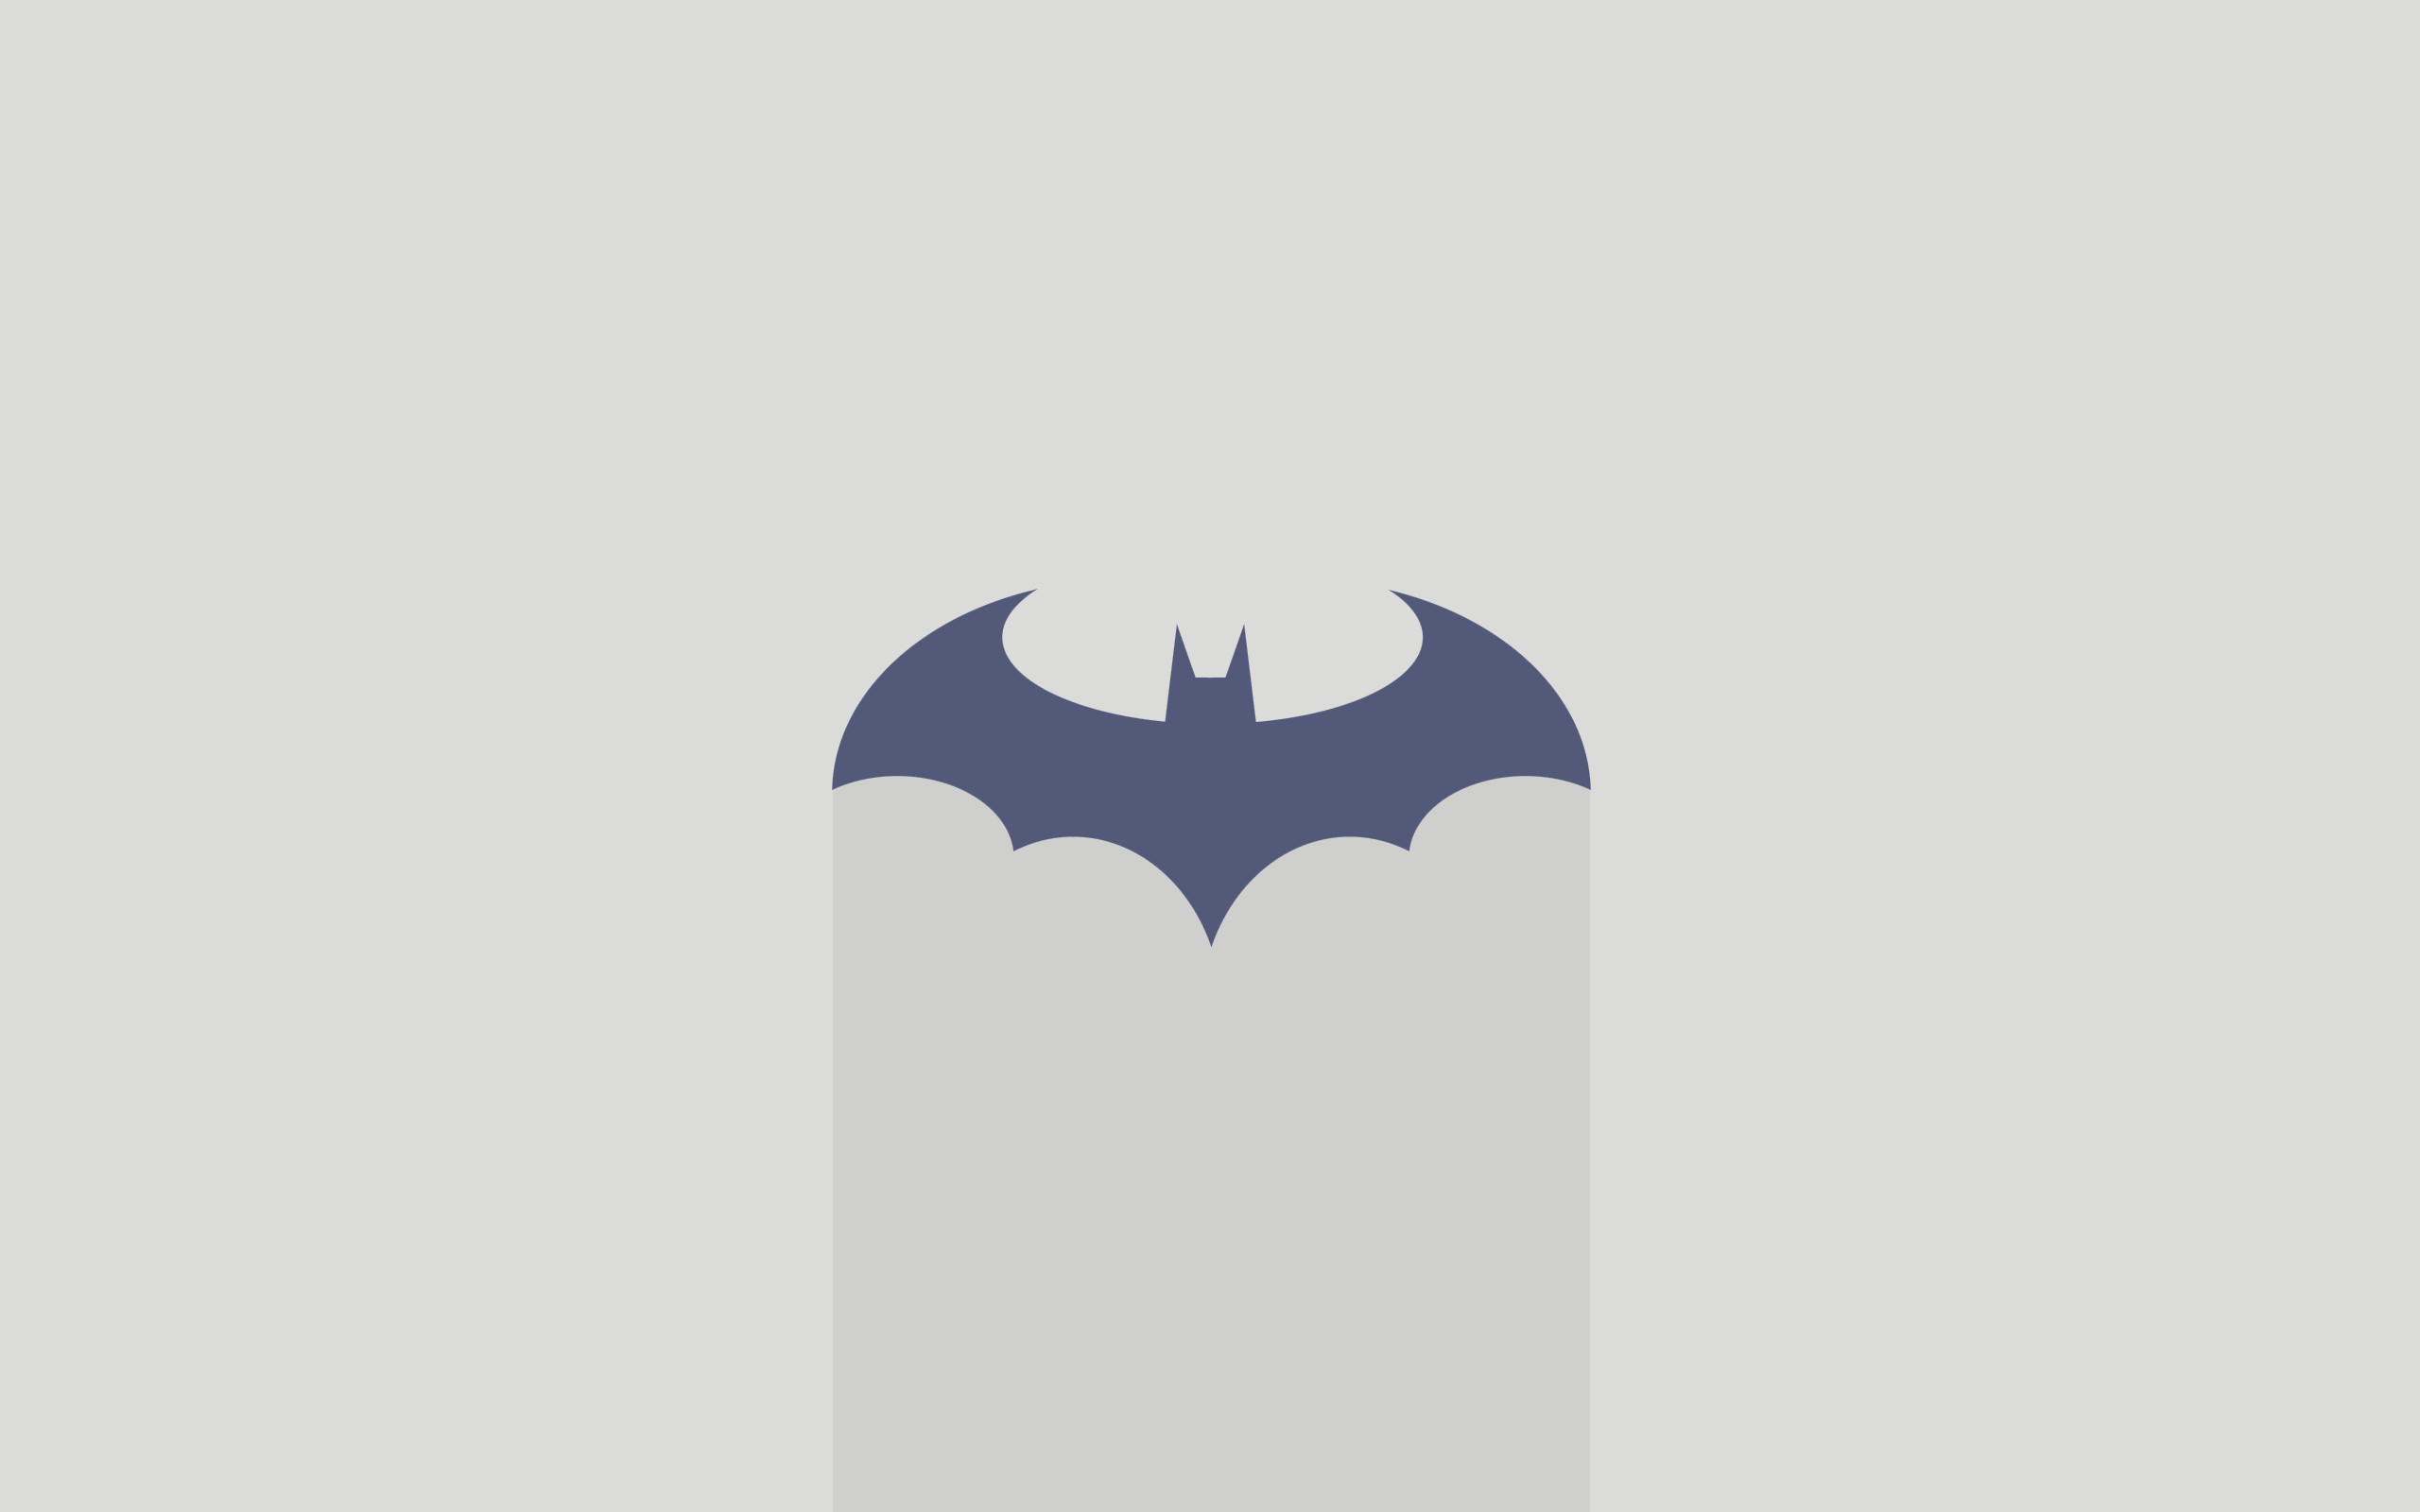 2560x1600 Minimalist Batman Wallpaper Background 59192